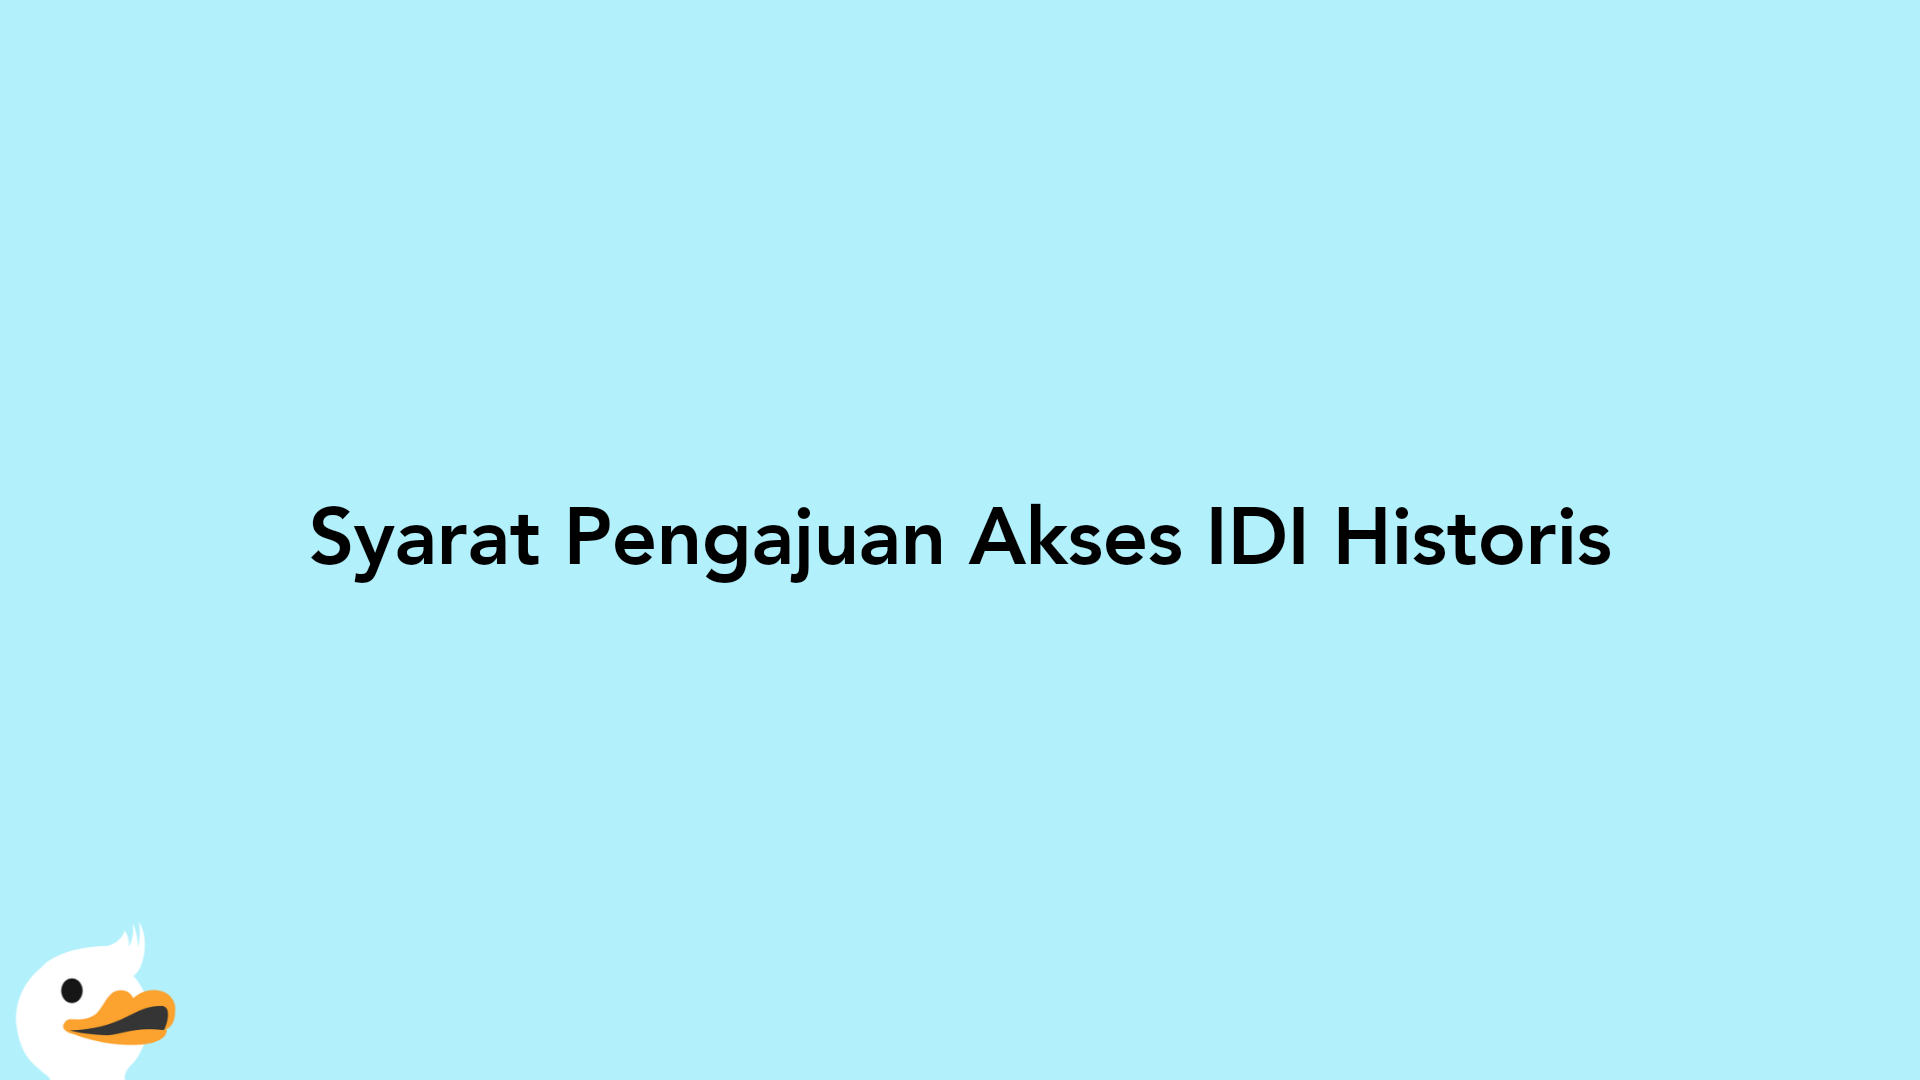 Syarat Pengajuan Akses IDI Historis